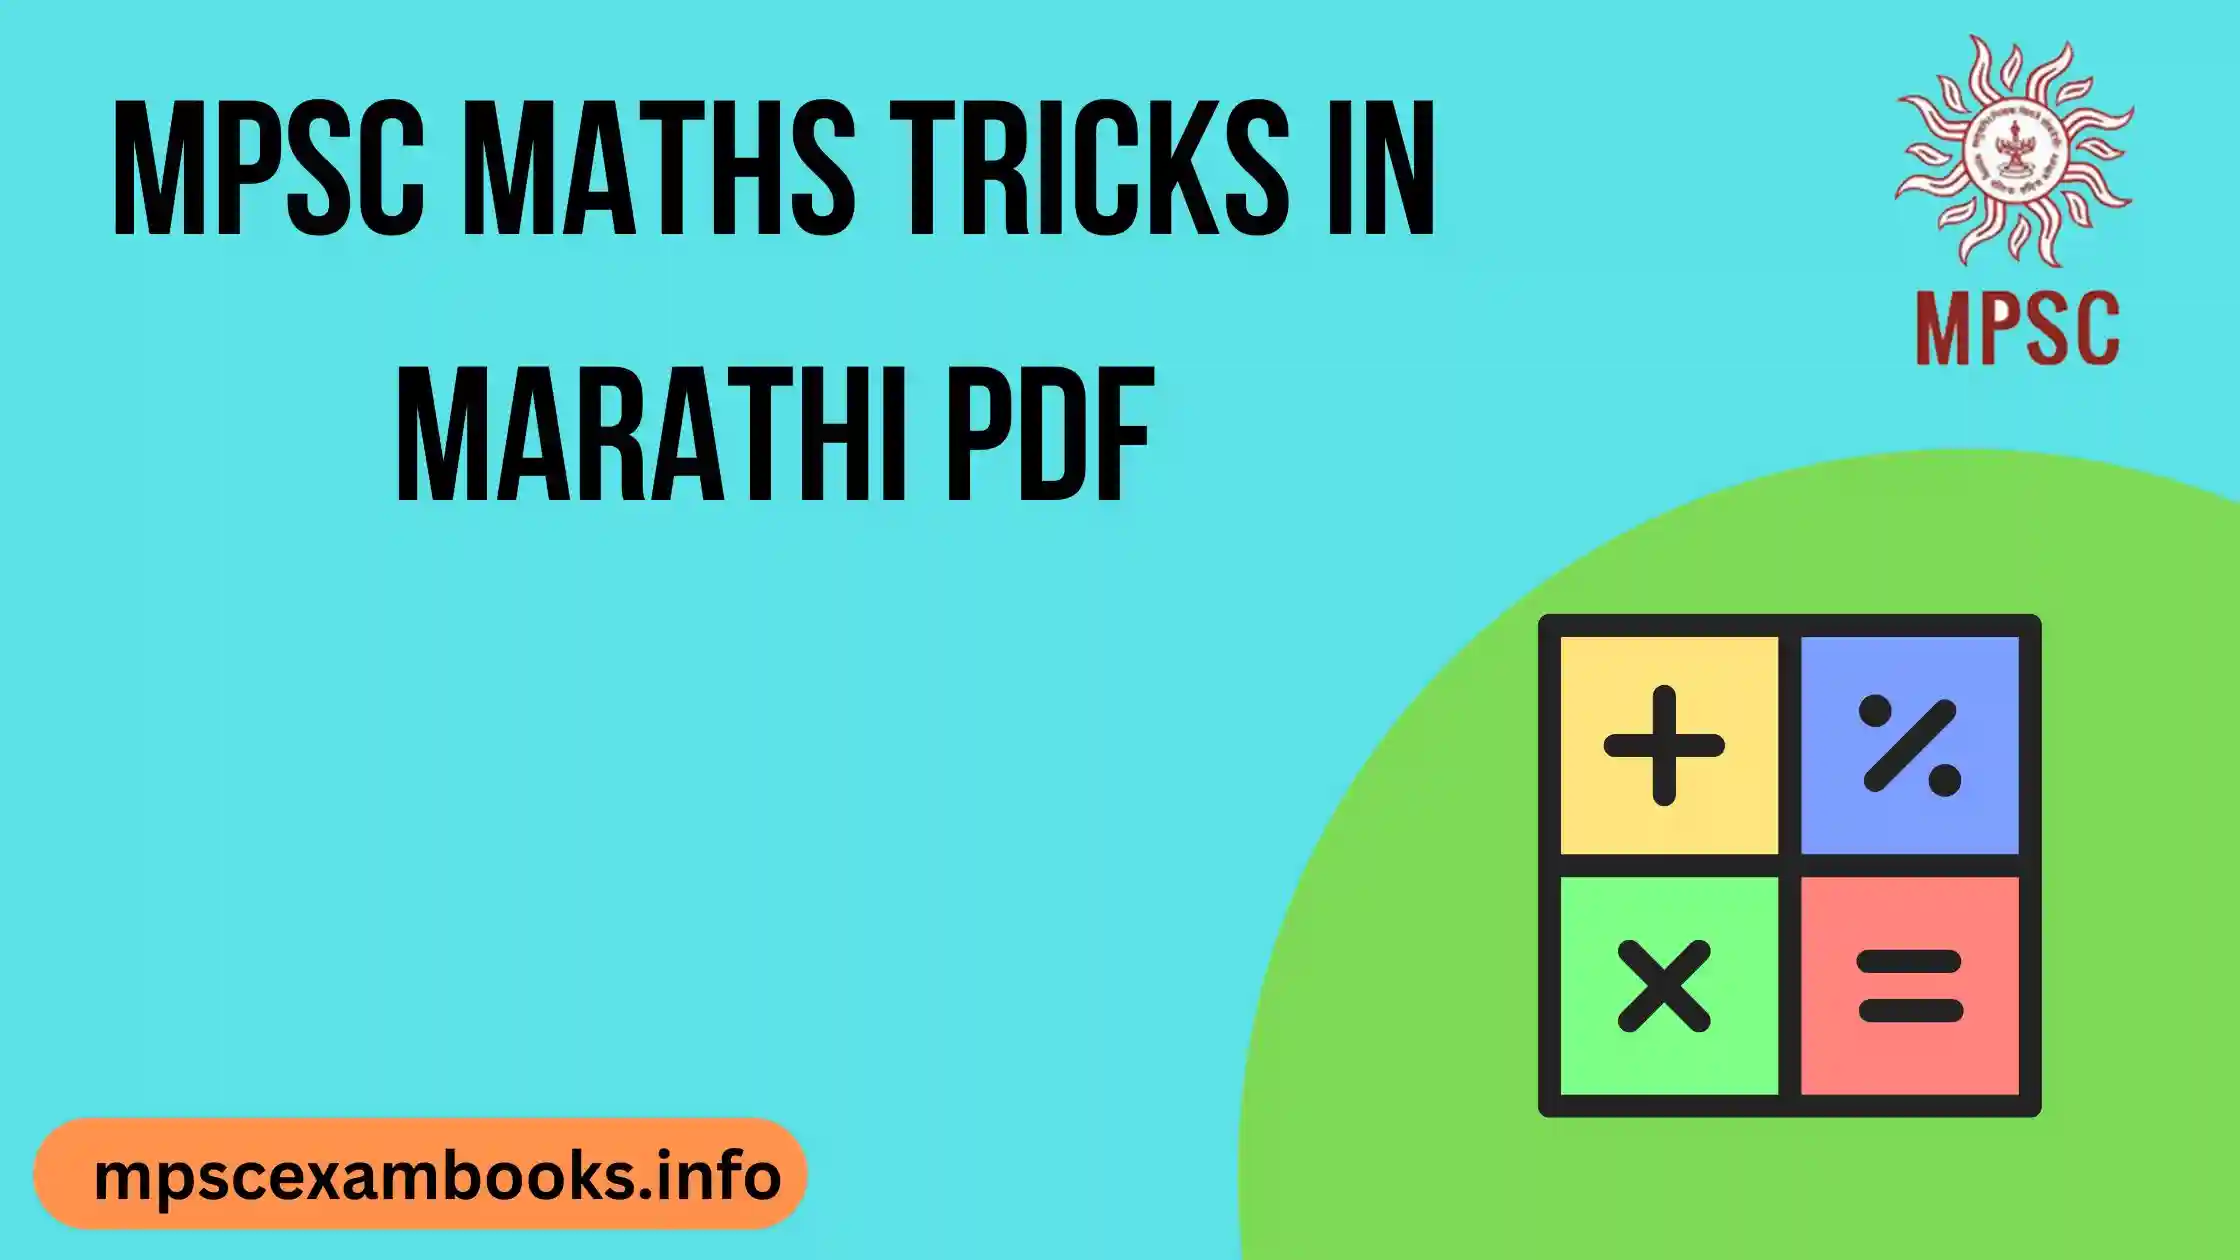 mpsc maths tricks in marathi pdf